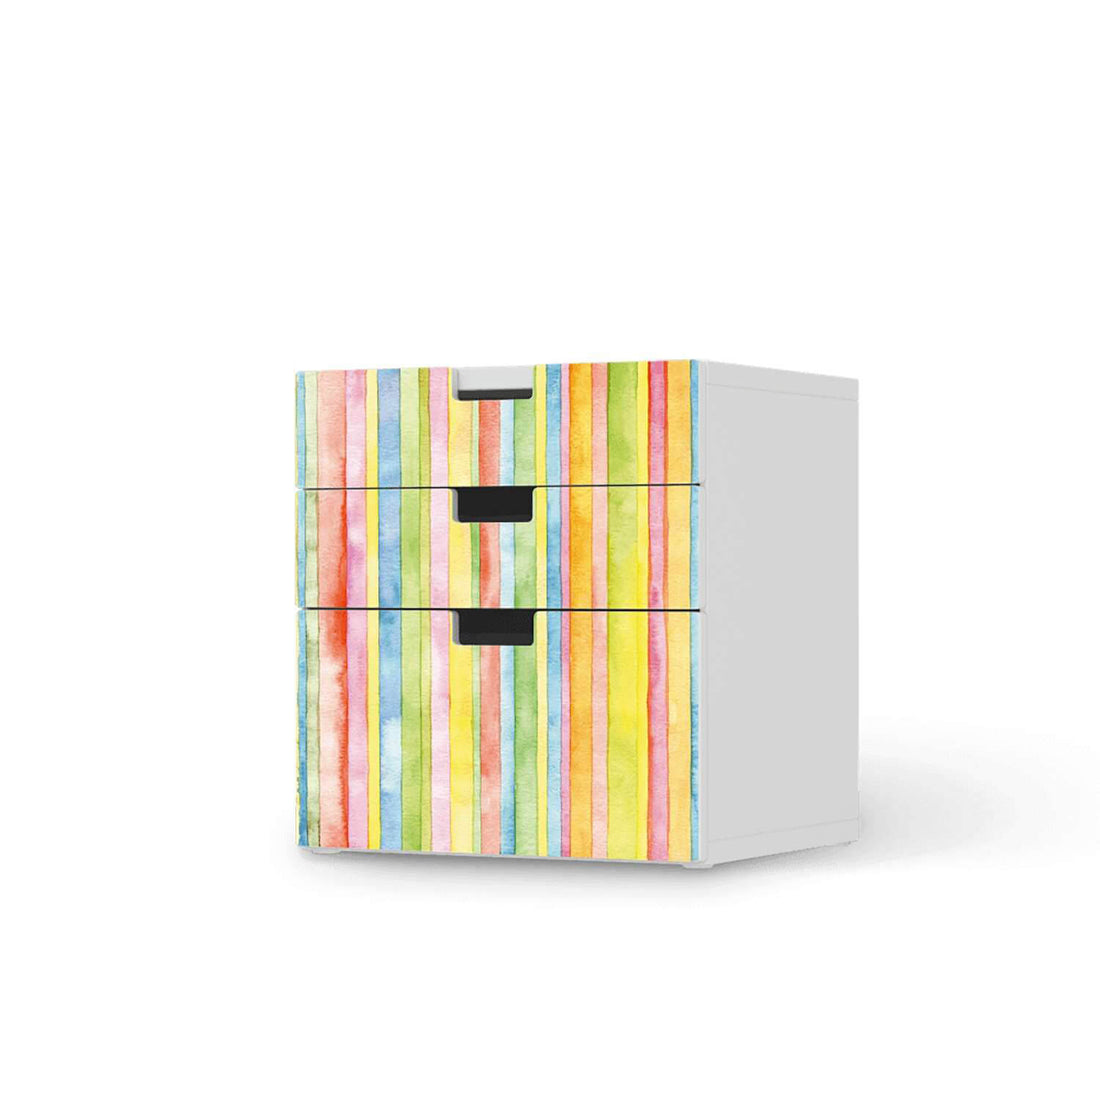 Folie für Möbel Watercolor Stripes - IKEA Stuva Kommode - 3 Schubladen (Kombination 1)  - weiss